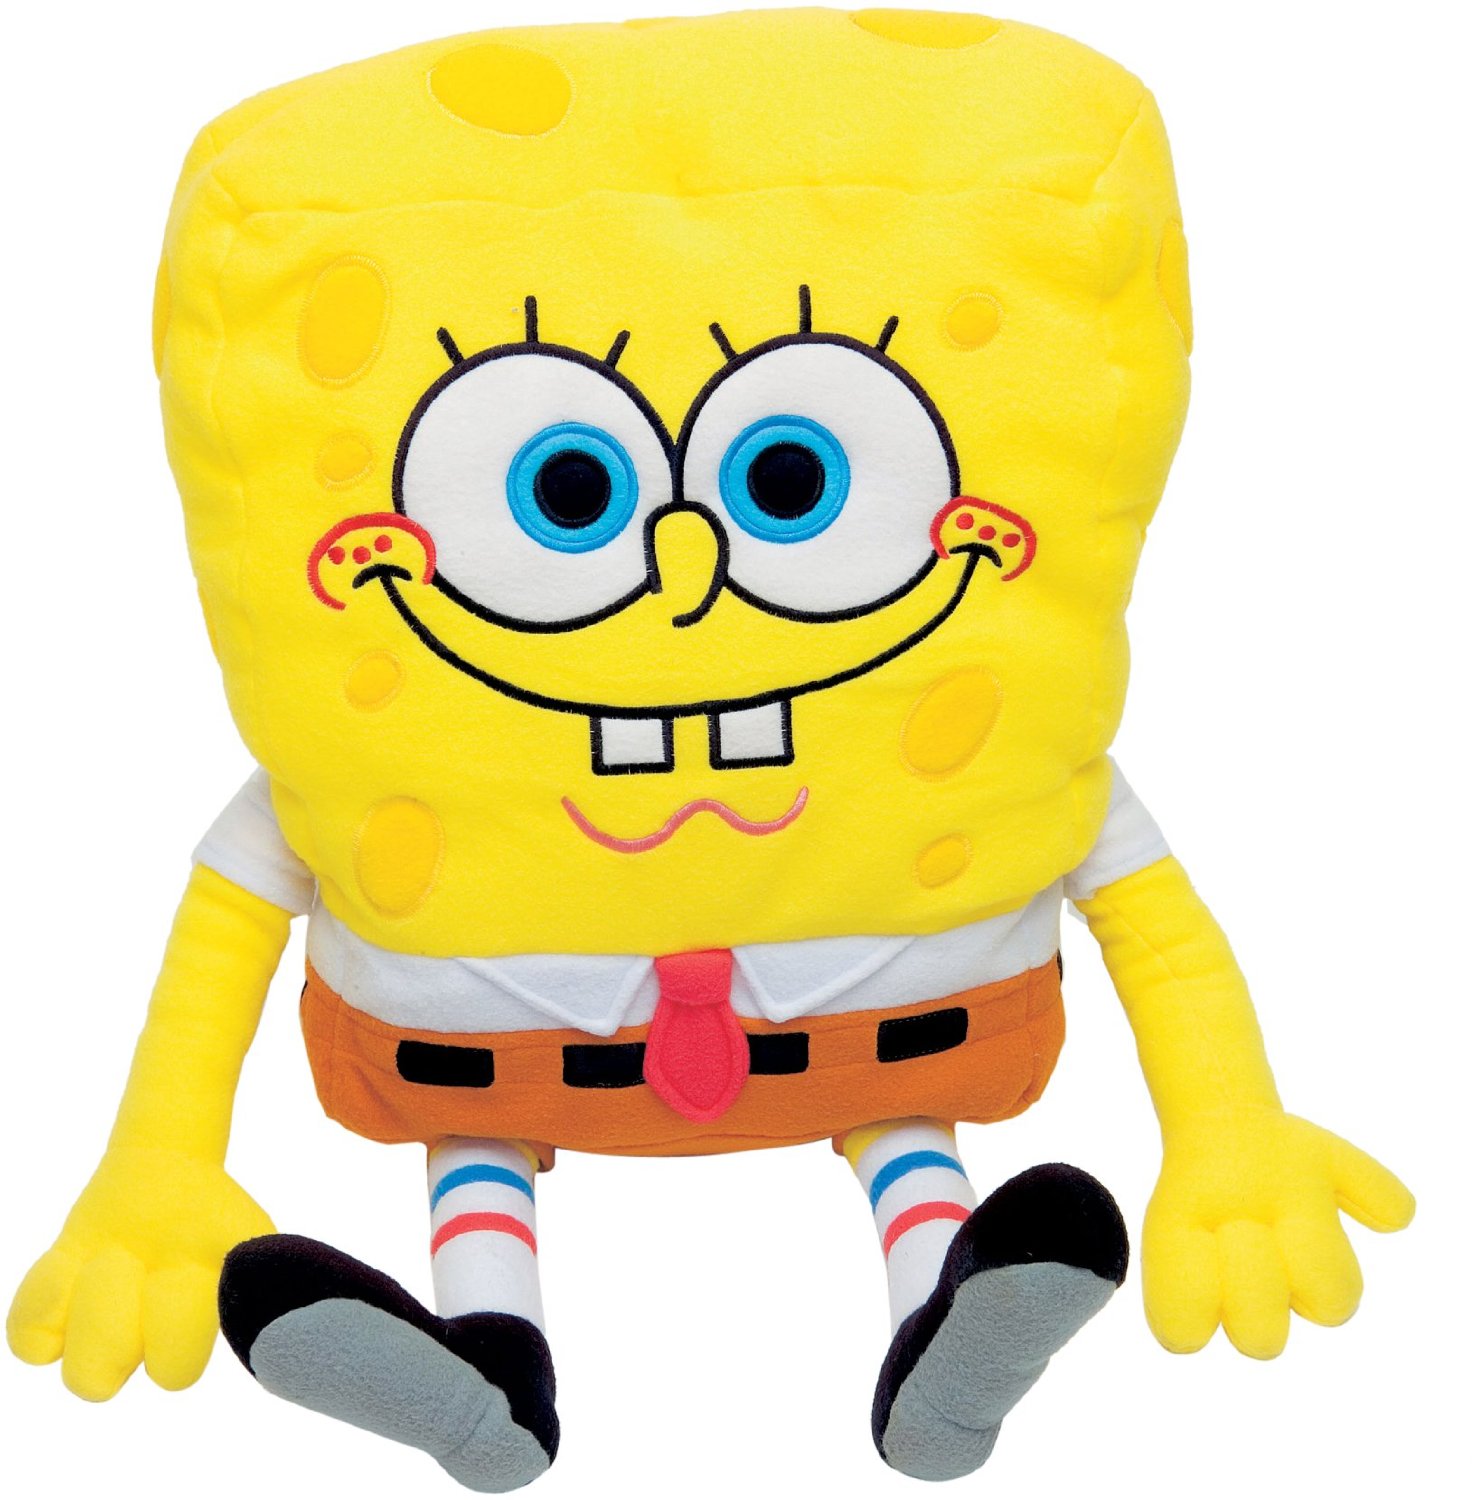 Spongebob Squarepants Pillow